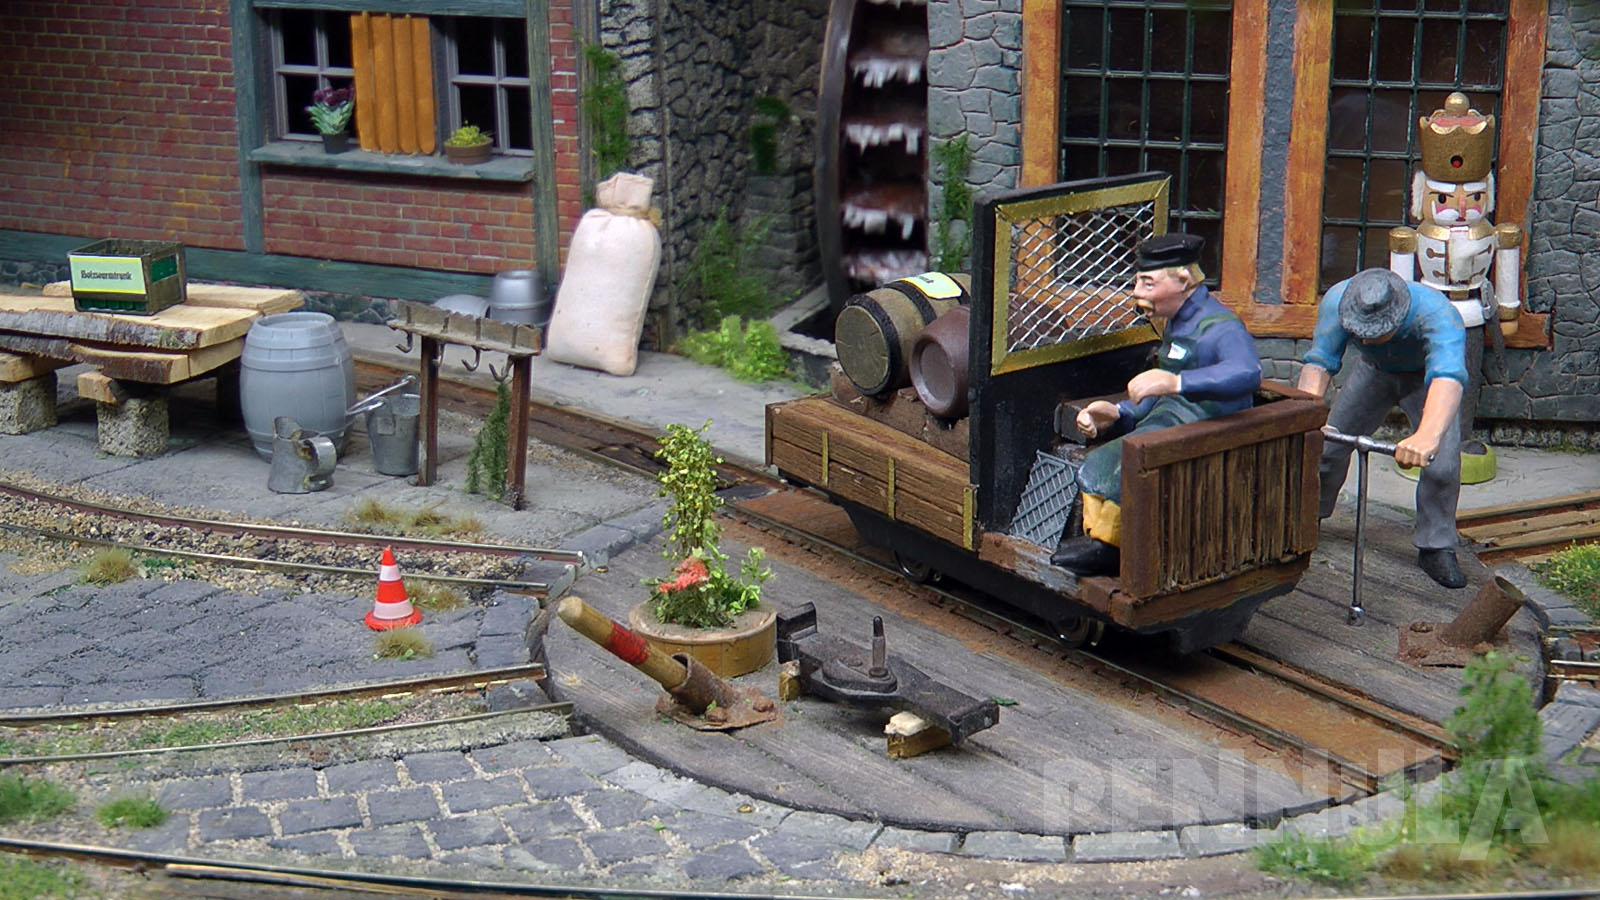 Das Diorama spiegelt das Erzgebirge wider, wo es auch heute noch zahlreiche kleine Handwerksbetriebe gibt, die Holzspielzeug und Weihnachtsartikel produzieren.